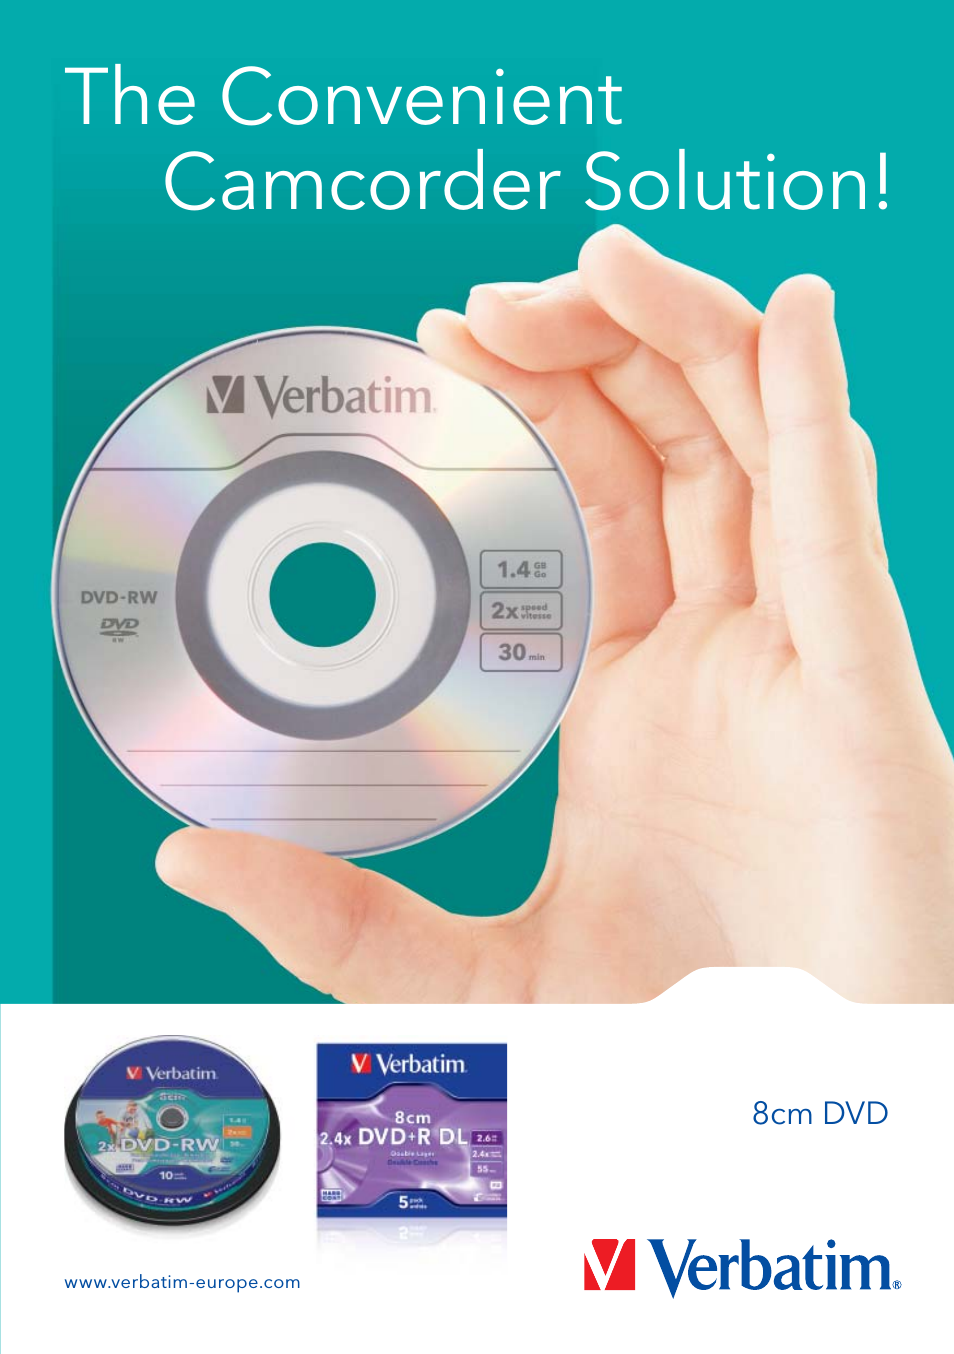 8cm DVD